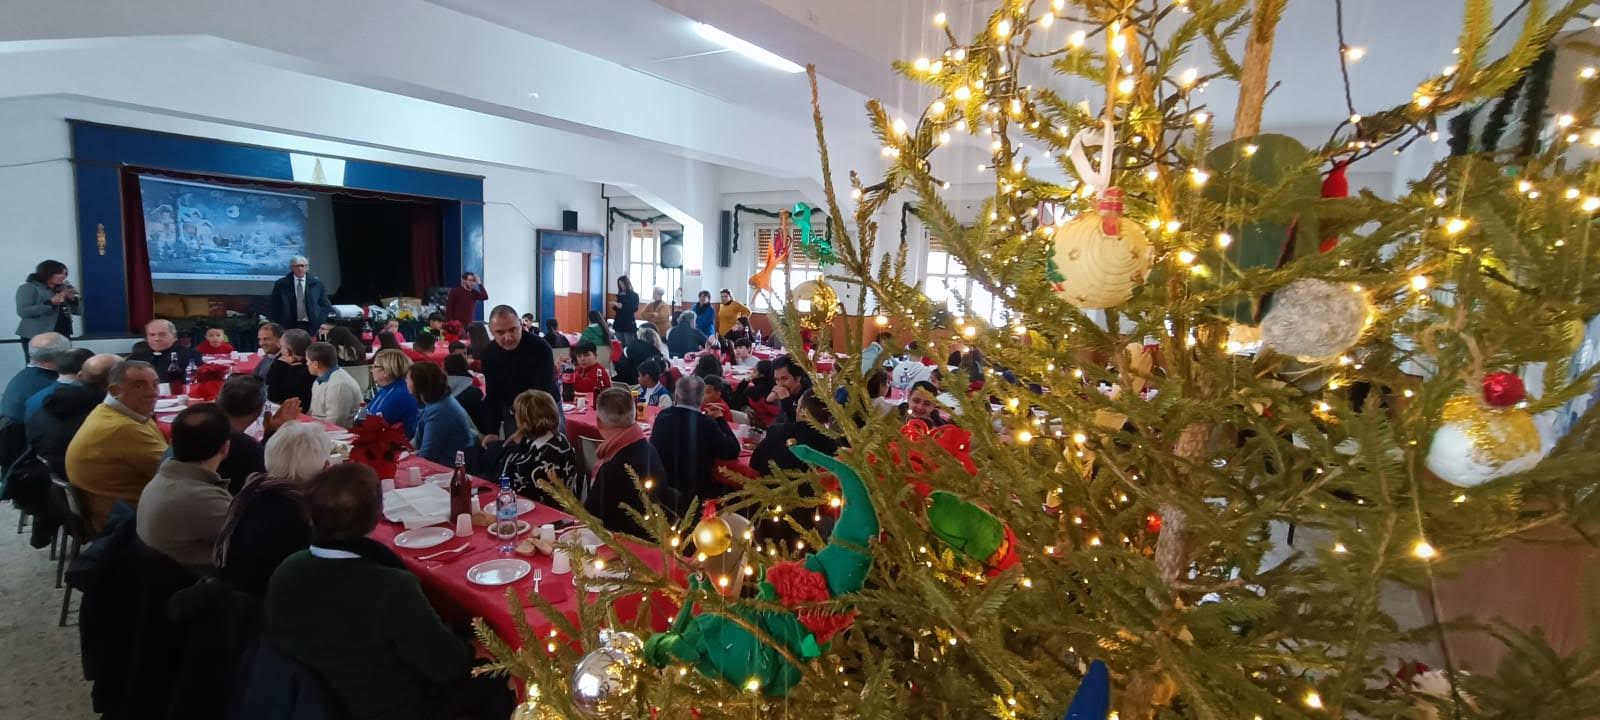 Reggio Christmas City, oltre 100 persone per il pranzo solidale a Gallico